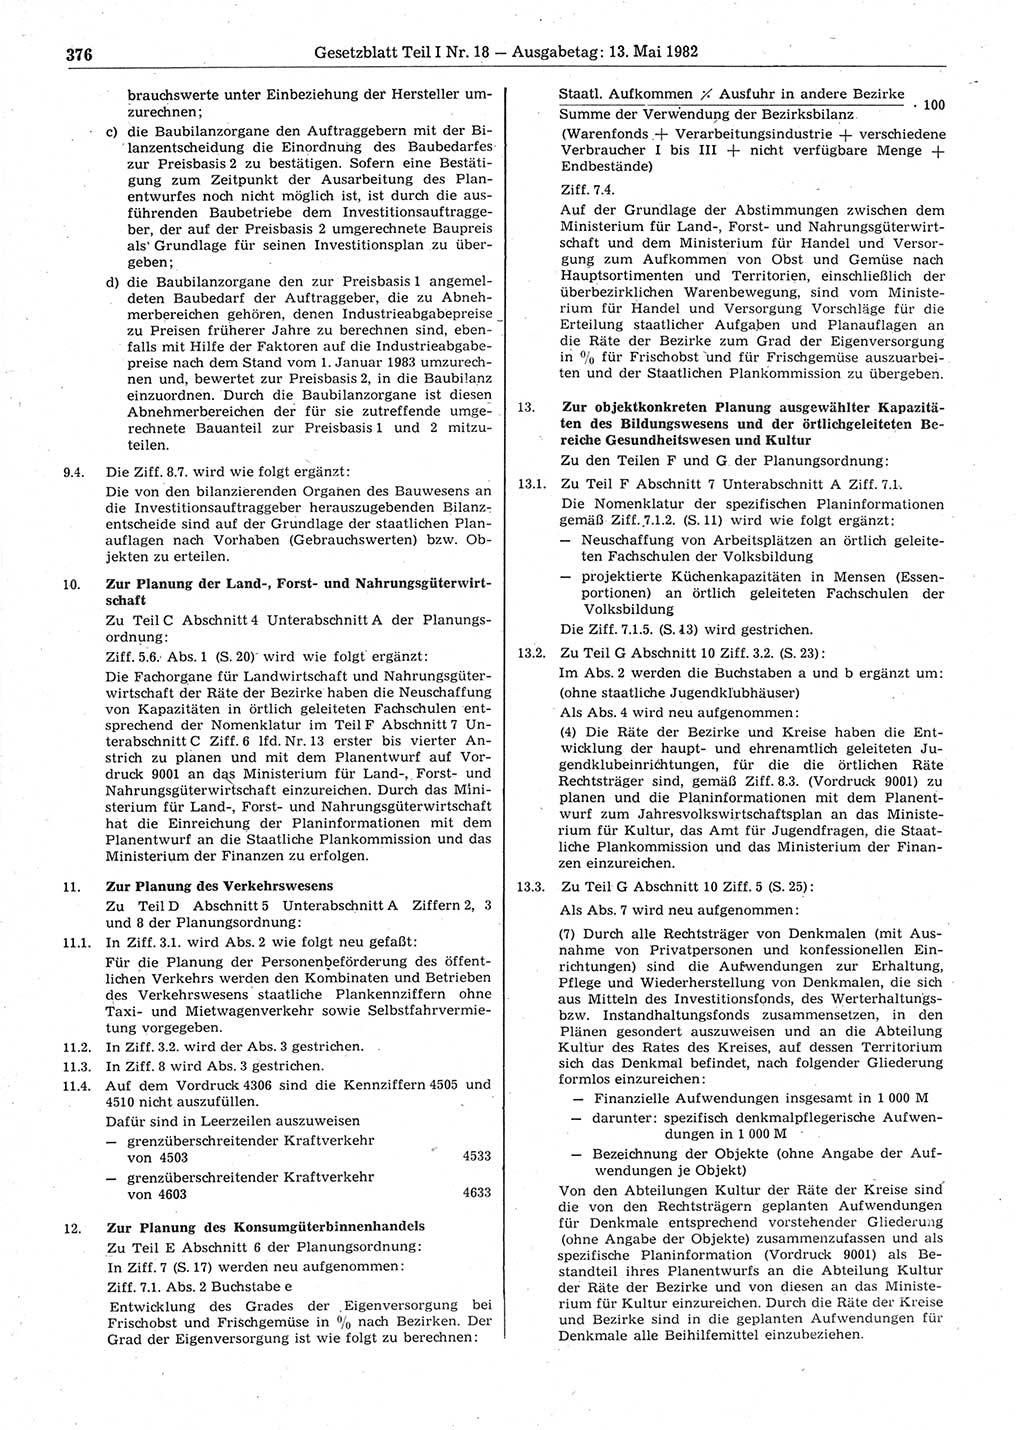 Gesetzblatt (GBl.) der Deutschen Demokratischen Republik (DDR) Teil Ⅰ 1982, Seite 376 (GBl. DDR Ⅰ 1982, S. 376)